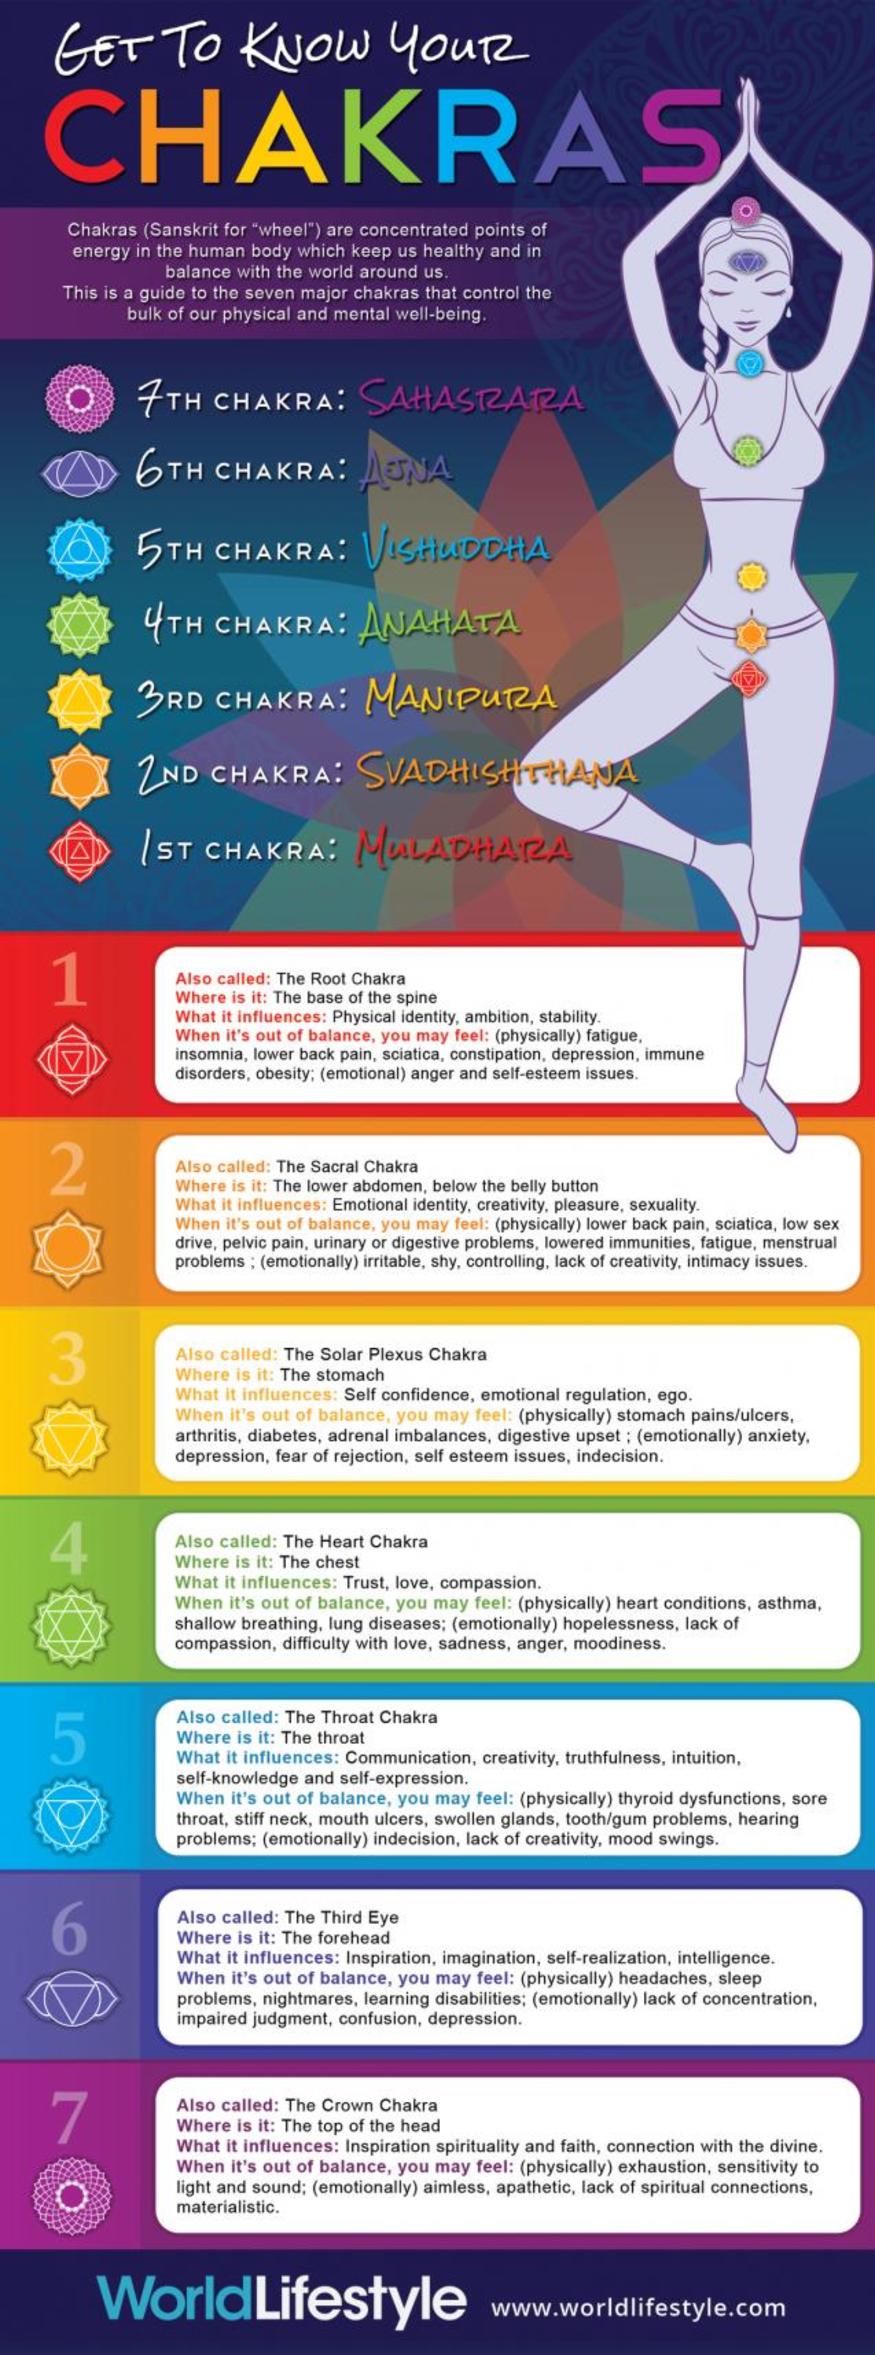 The Advantages of Restorative Yoga